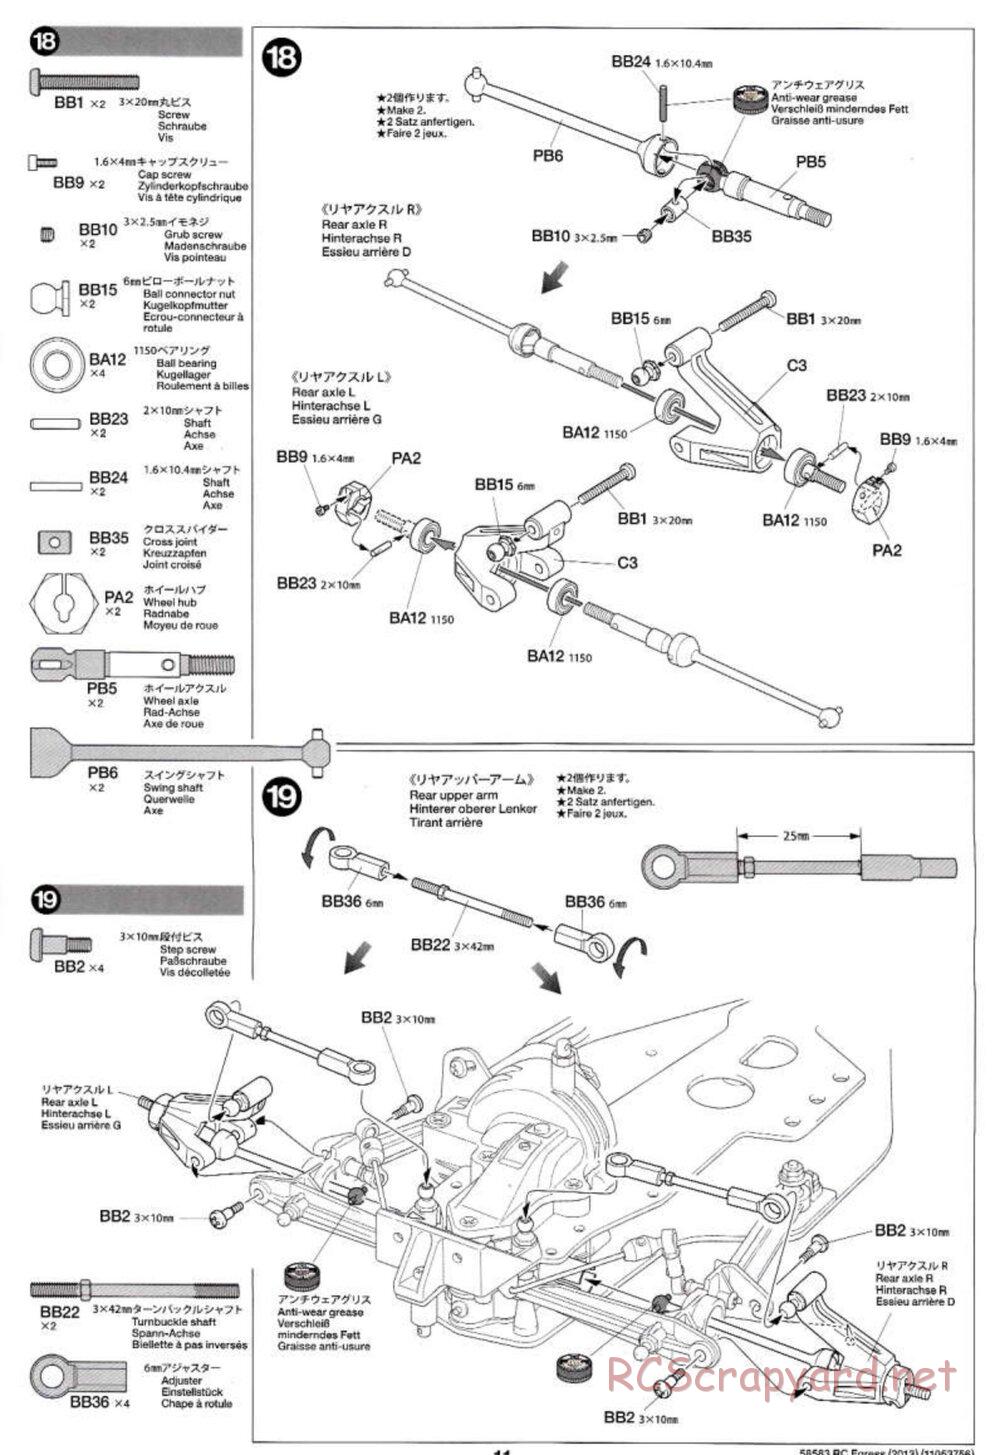 Tamiya - Egress 2013 - AV Chassis - Manual - Page 11